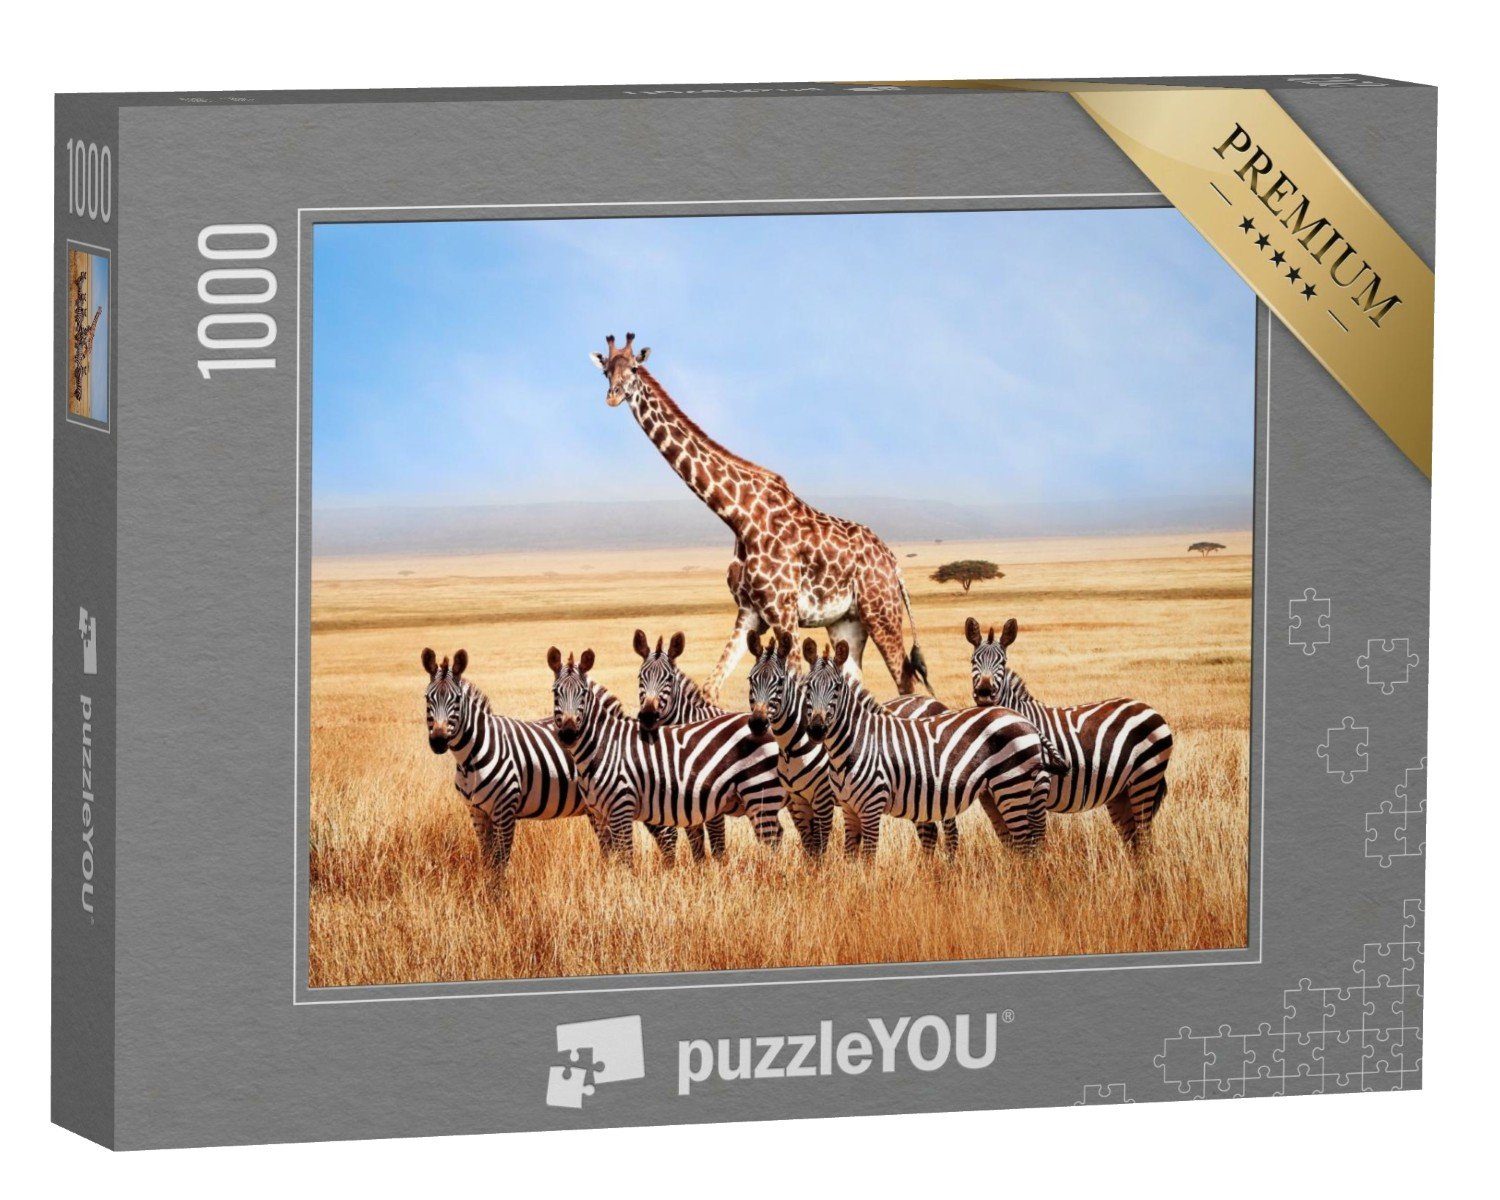 puzzleYOU Puzzle Zebras und Giraffe in der afrikanischen Savanne, 1000 Puzzleteile, puzzleYOU-Kollektionen Zebras, Safari, Tiere in Savanne & Wüste